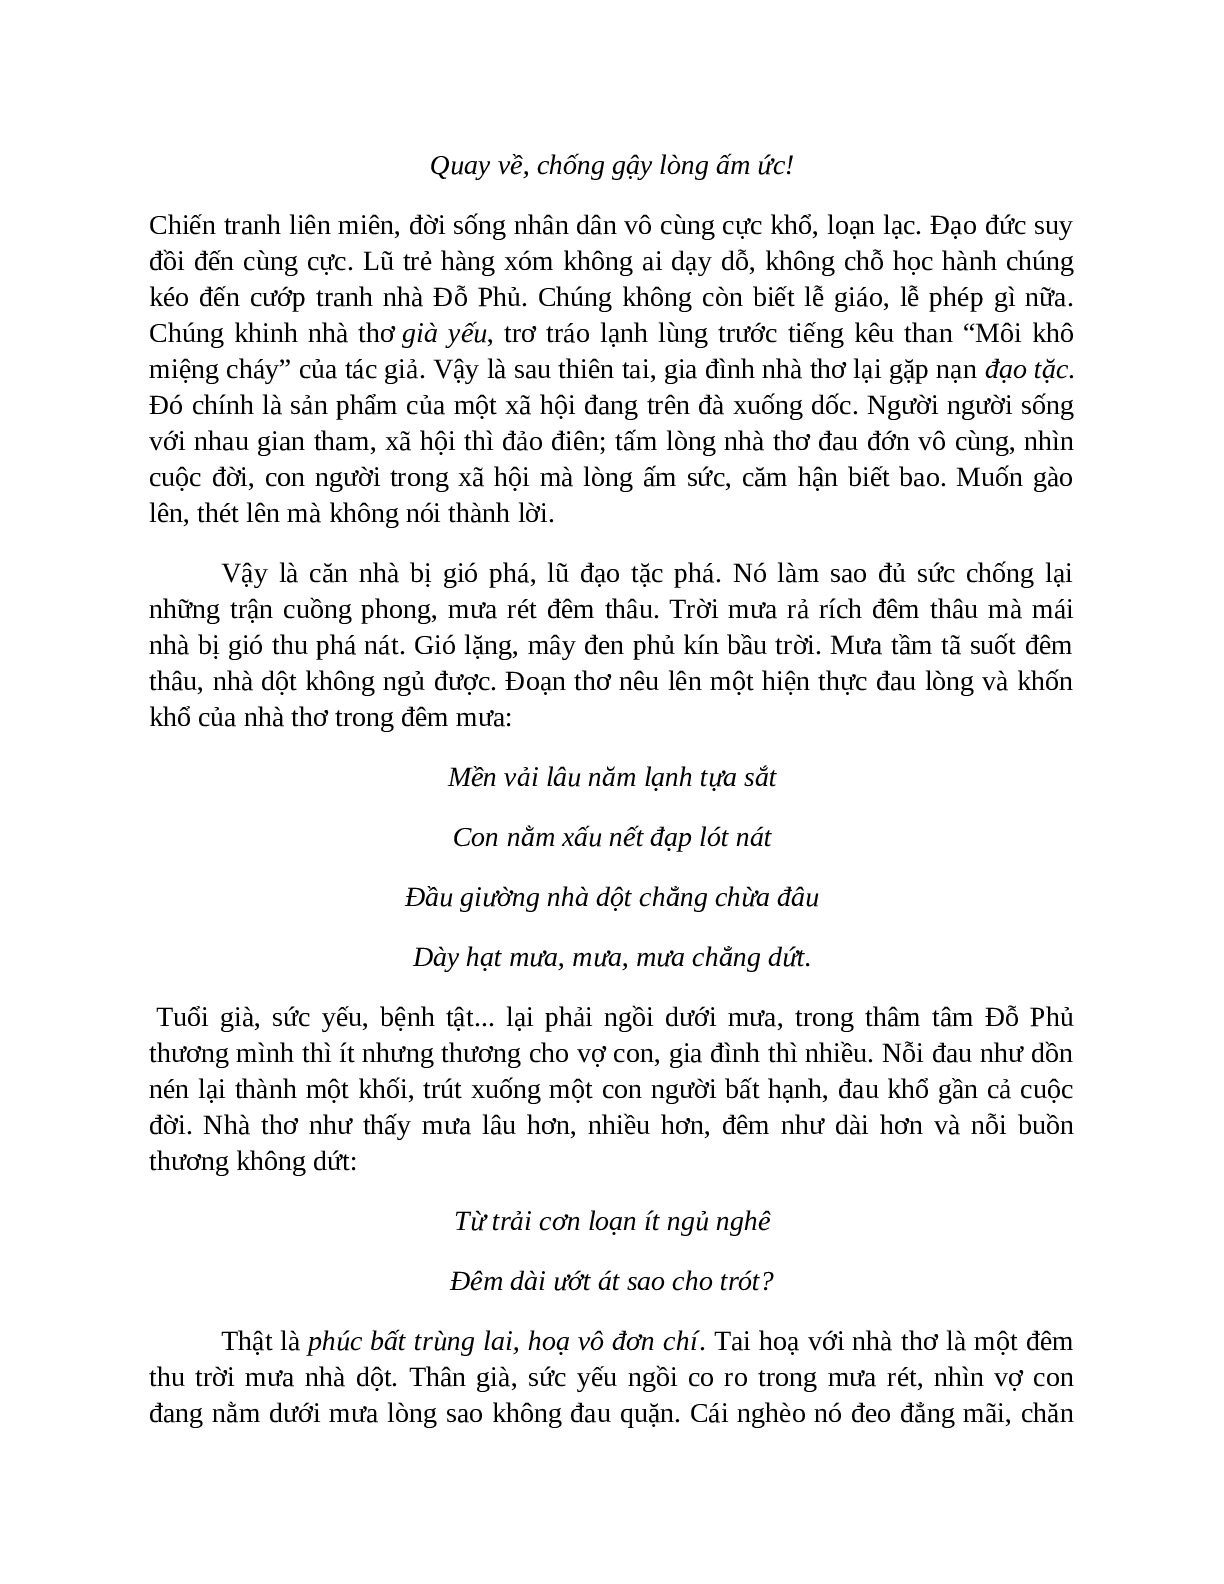 Sơ đồ tư duy bài Bài ca nhà tranh bị gió thu phá dễ nhớ, ngắn nhất - Ngữ văn lớp 7 (trang 8)